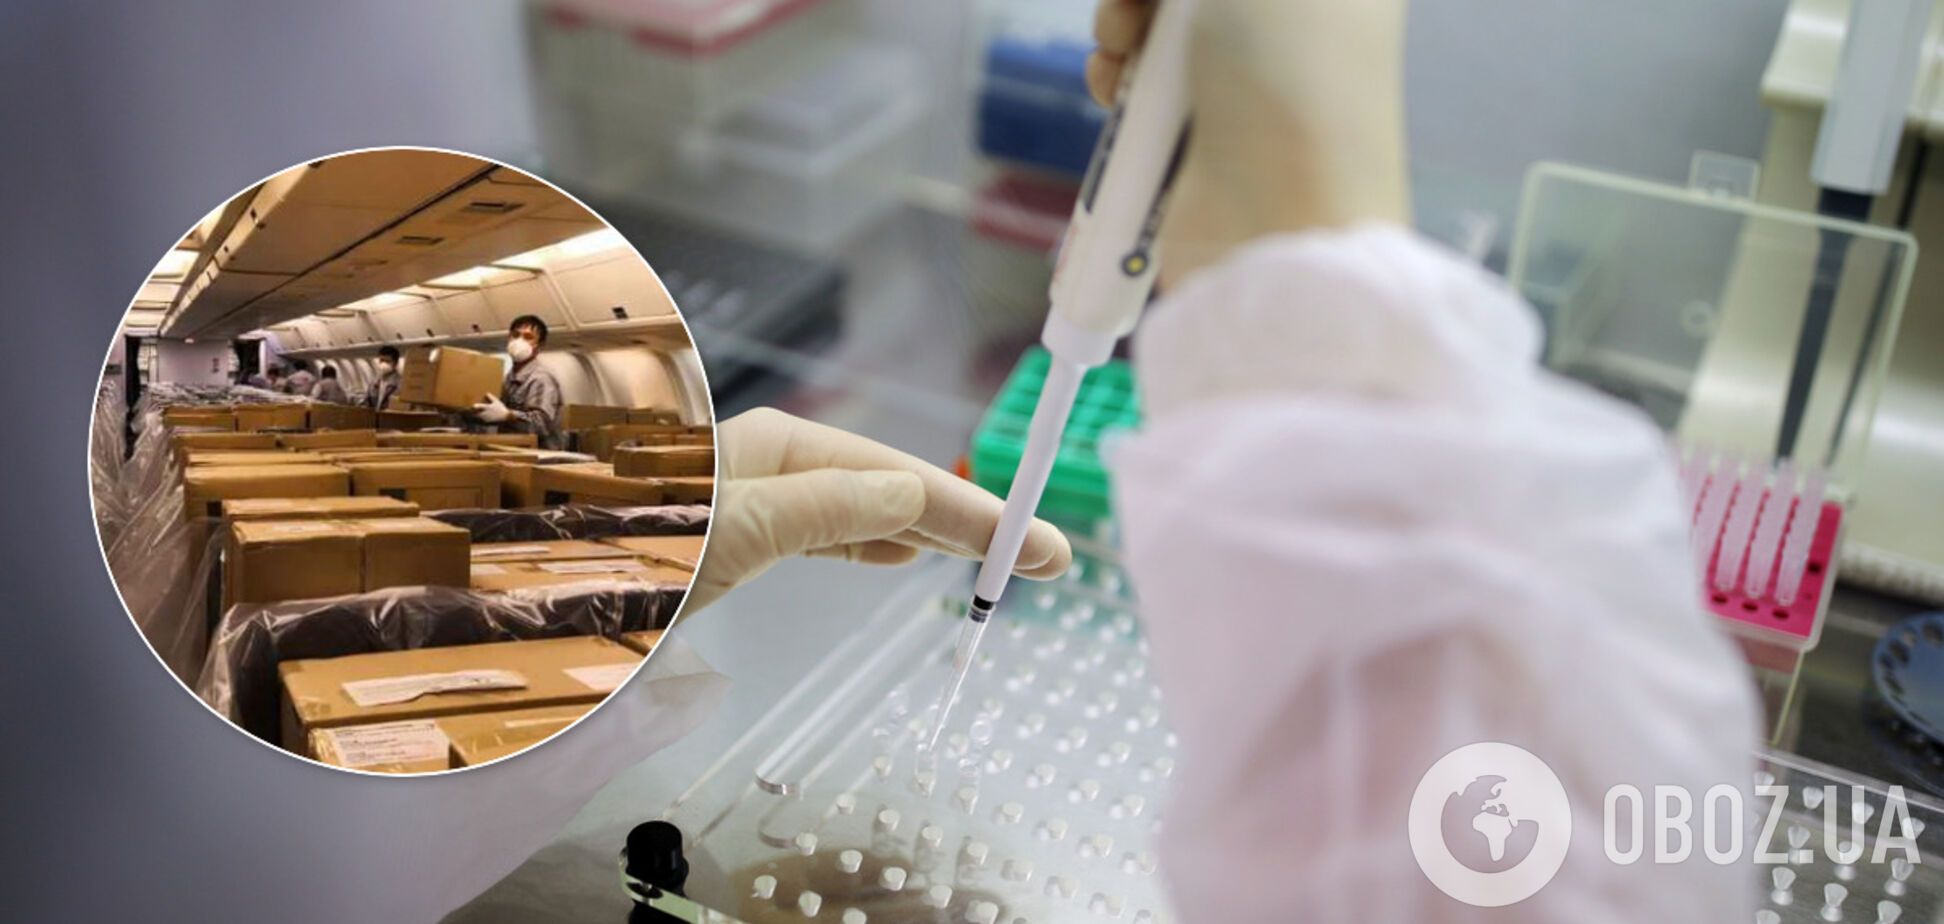 В Украине разгорелся скандал из-за 'отечественных' тестов на коронавирус: могли 'одолжить' с китайской гуманитарки